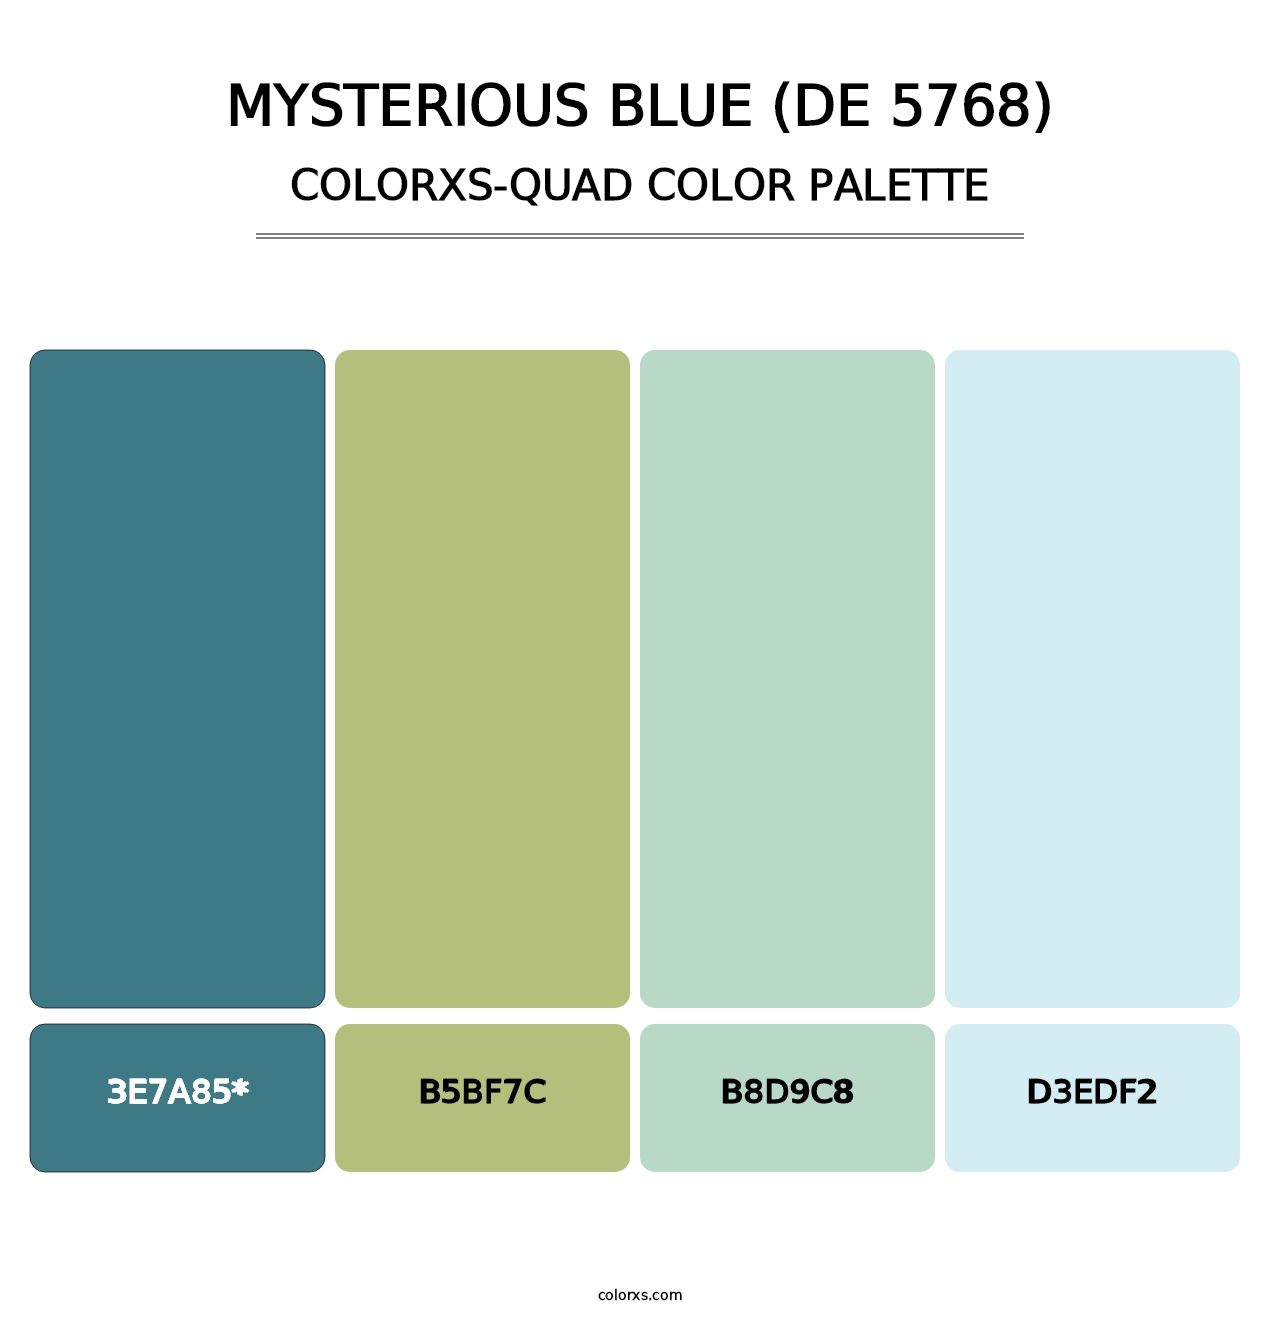 Mysterious Blue (DE 5768) - Colorxs Quad Palette